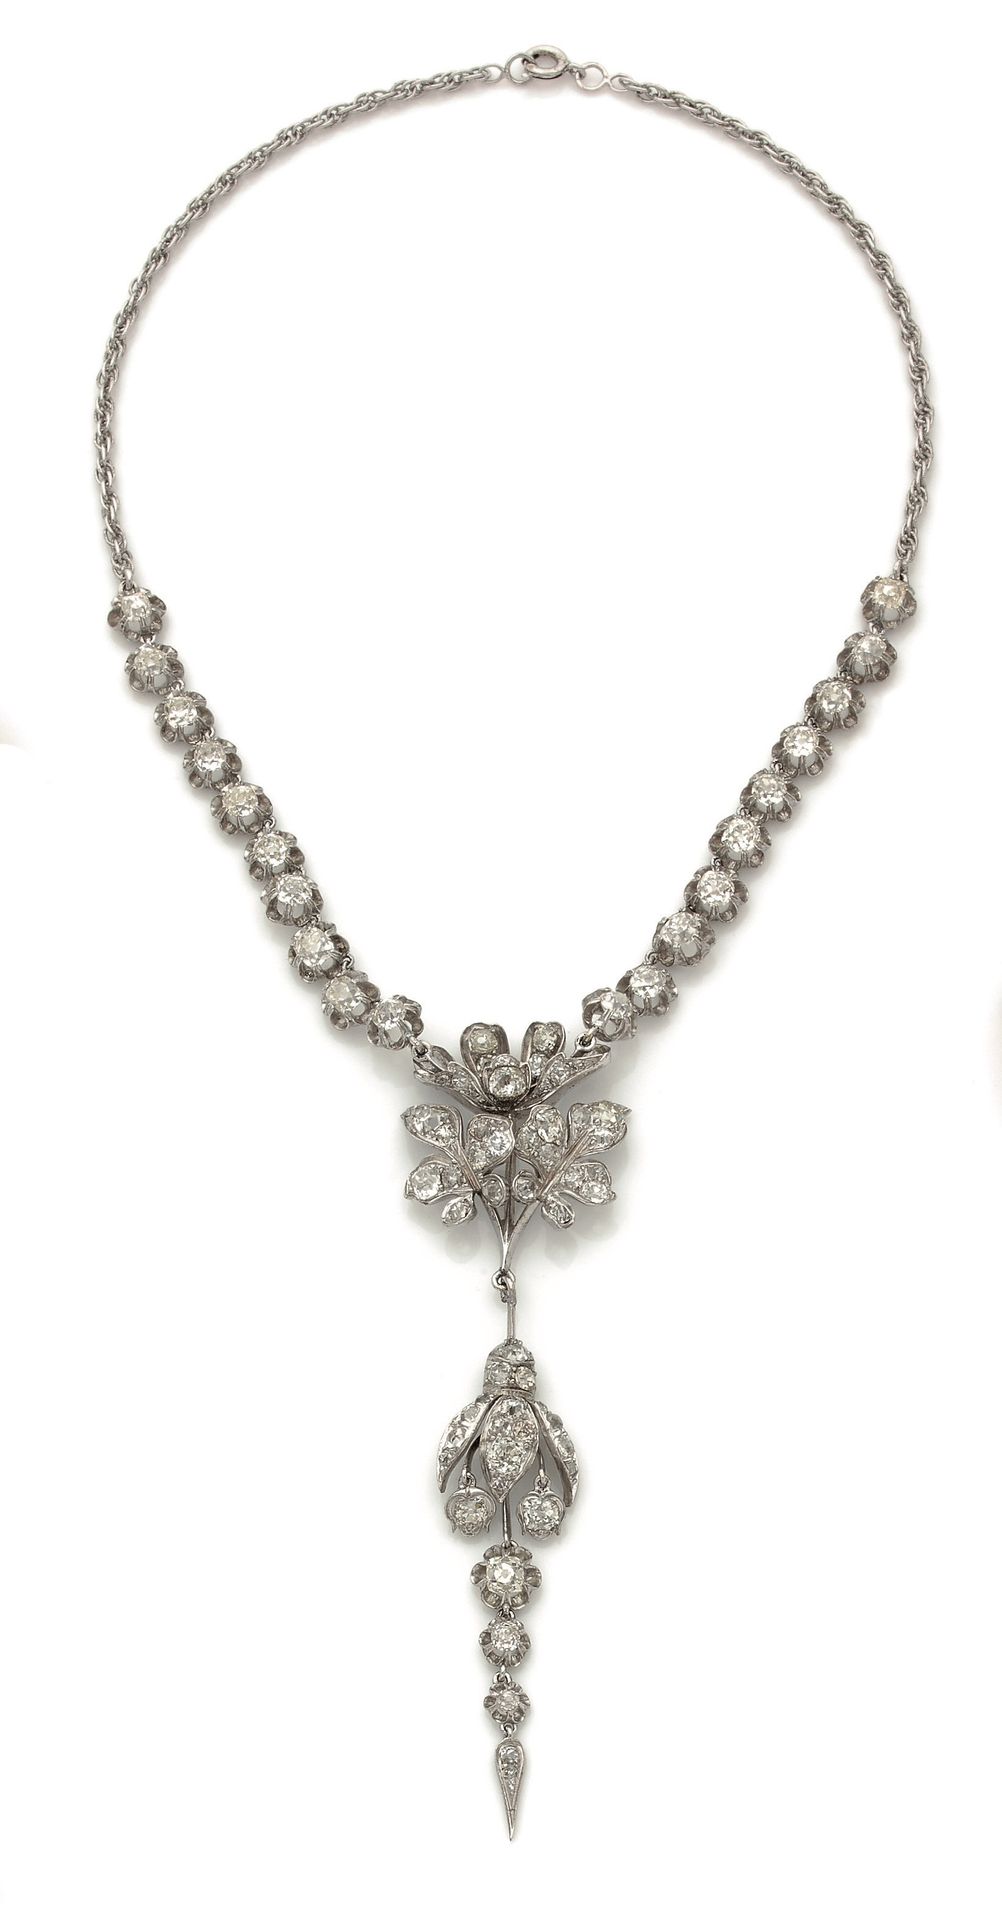 Null 一条银质项链，由镶嵌着玫瑰式切割钻石的胸针的一部分制成，项链上镶嵌着老式切割钻石。拿破仑三世时期（转型）。毛重24.1克